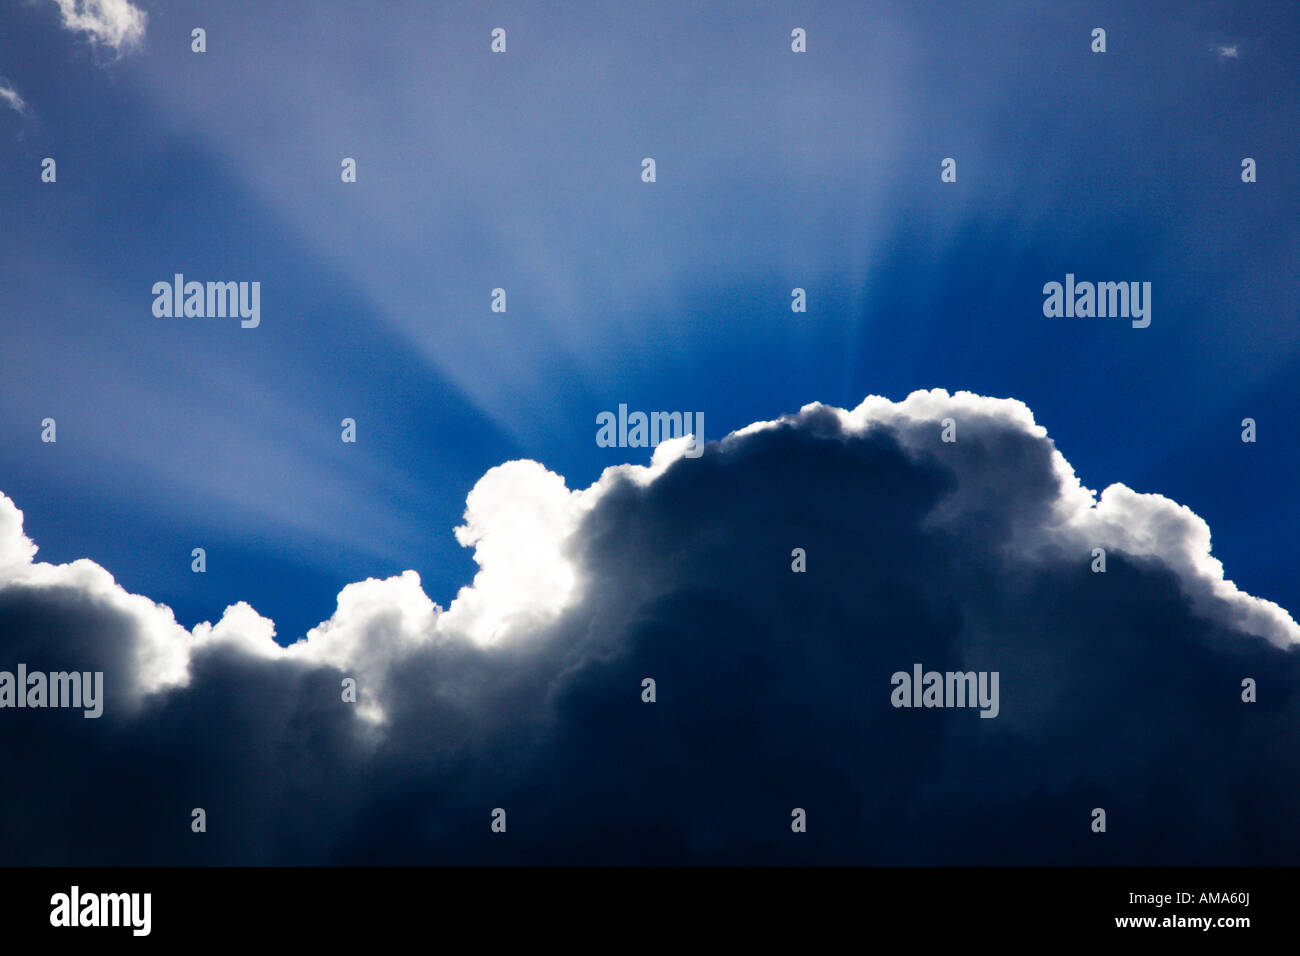 Haces de luz solar que brillan detrás de una nube contra el cielo azul Foto de stock